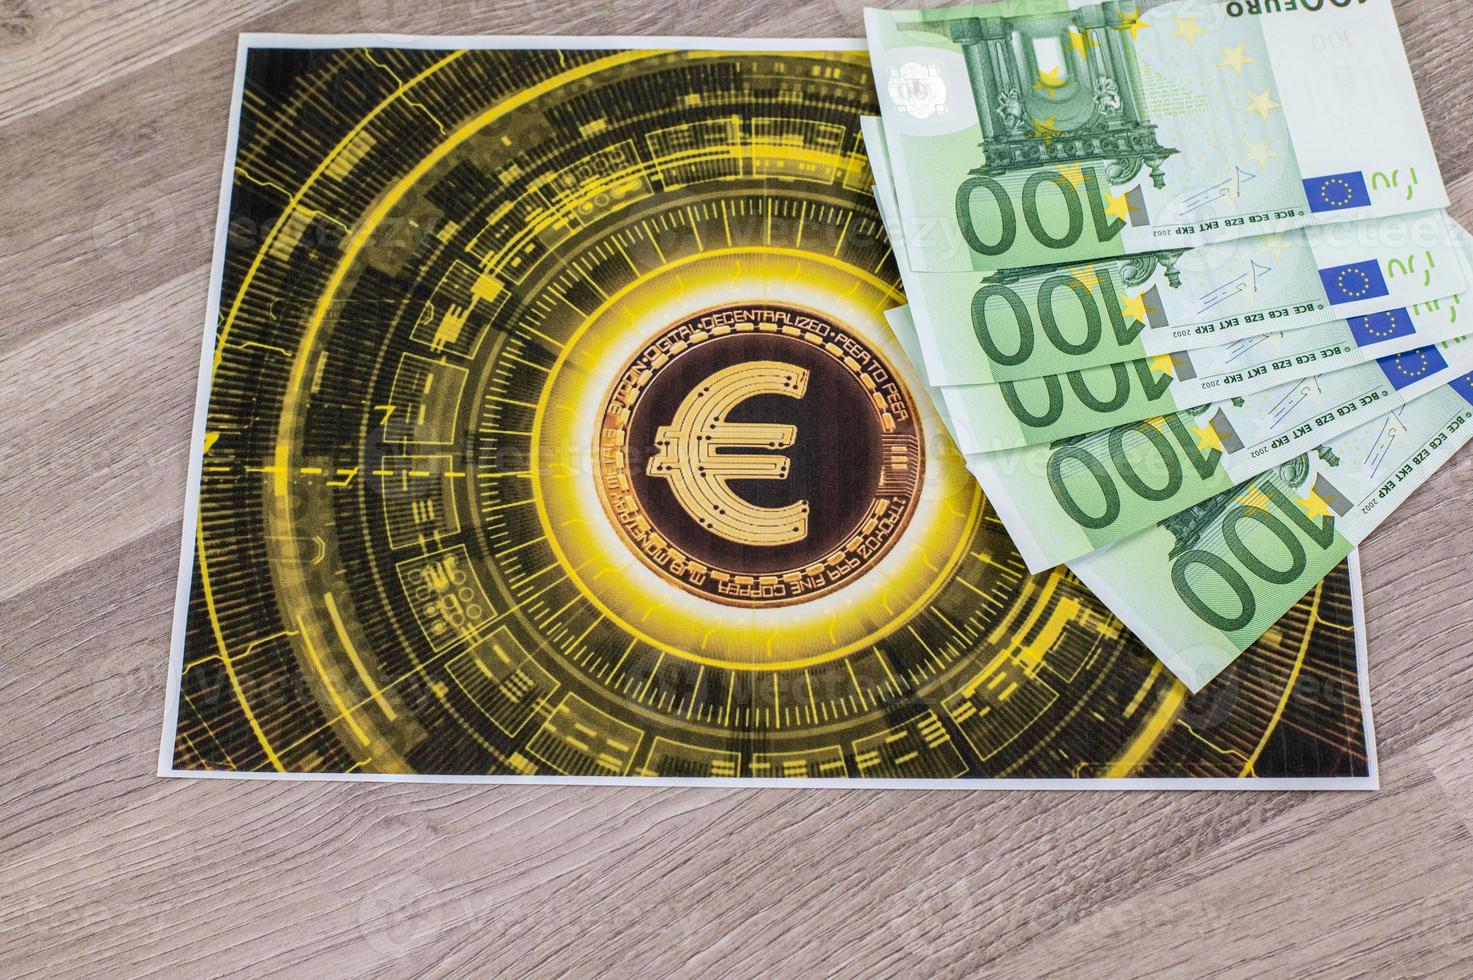 Notas de 100 euros e tepetino com o símbolo do euro foto